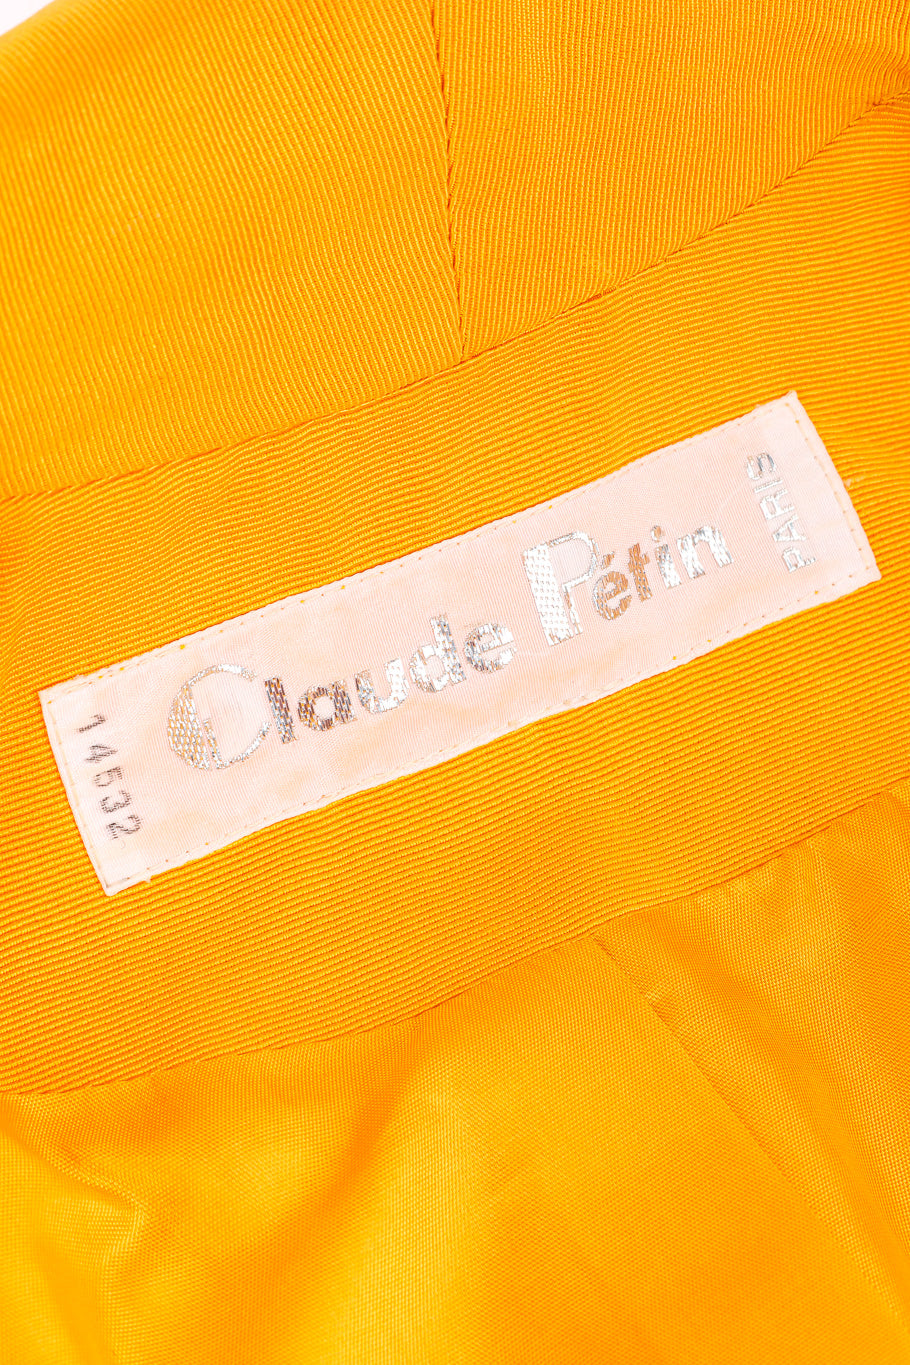 Embellished jacket top by Claude Pétin label @recessla